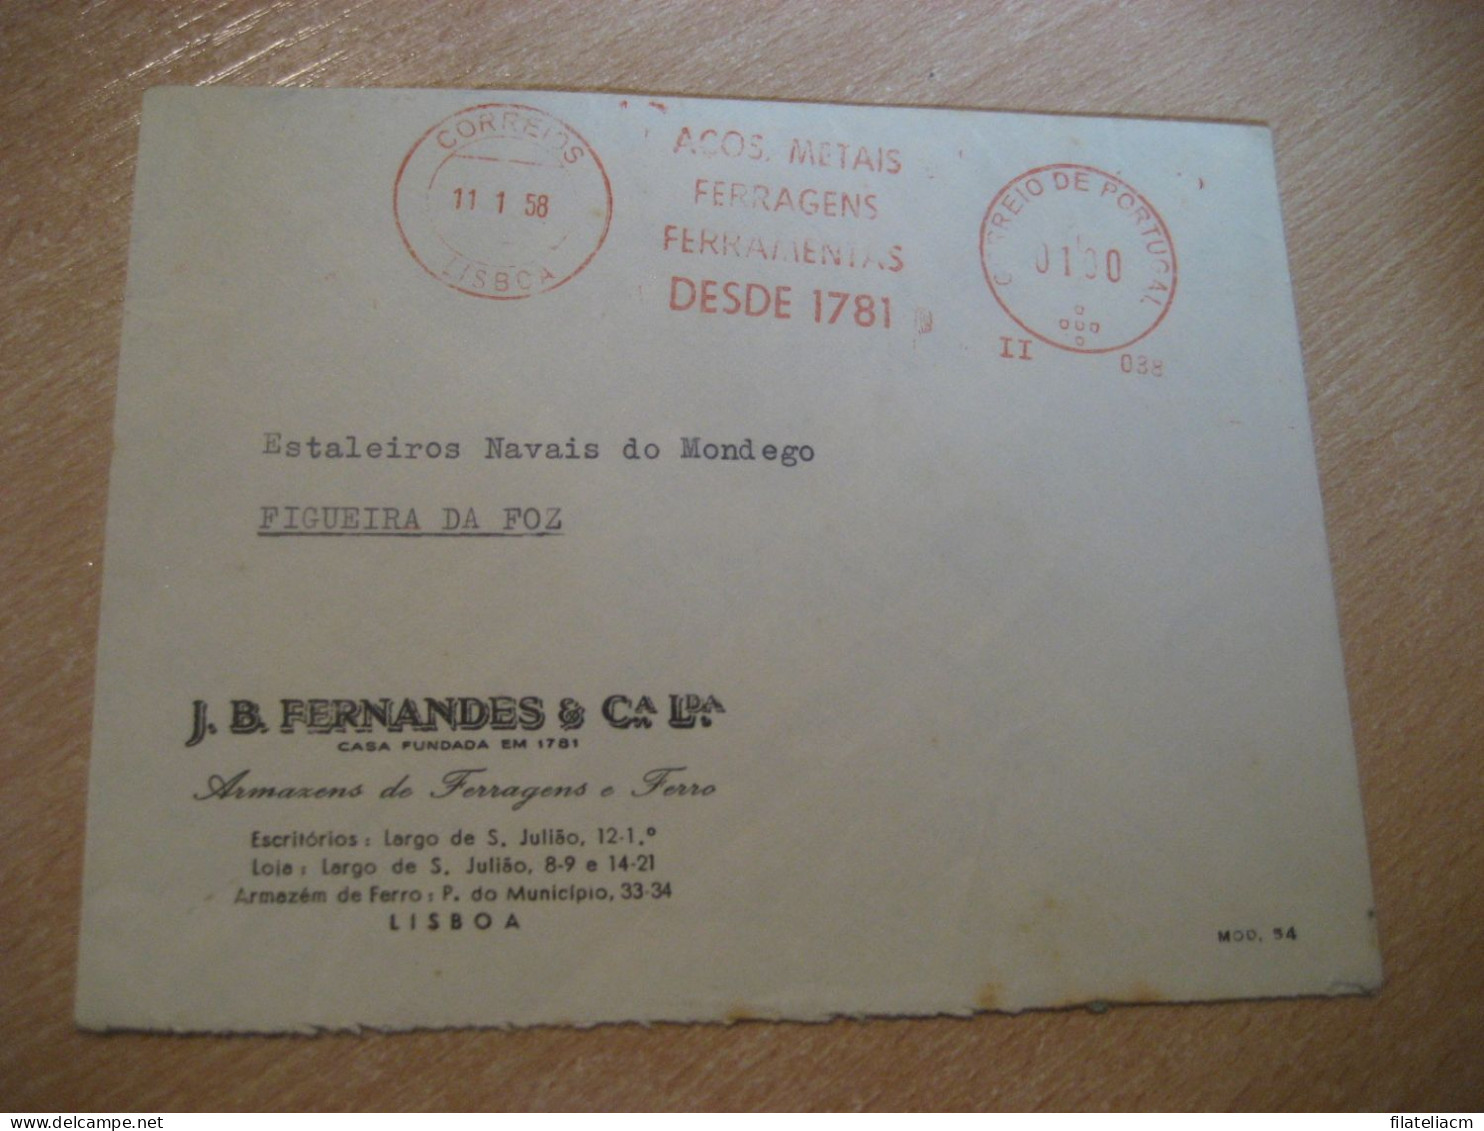 LISBOA 1958 To Figueira Da Foz Acos Metais Ferragens Ferramentas Meter Mail Cancel Cover PORTUGAL - Covers & Documents